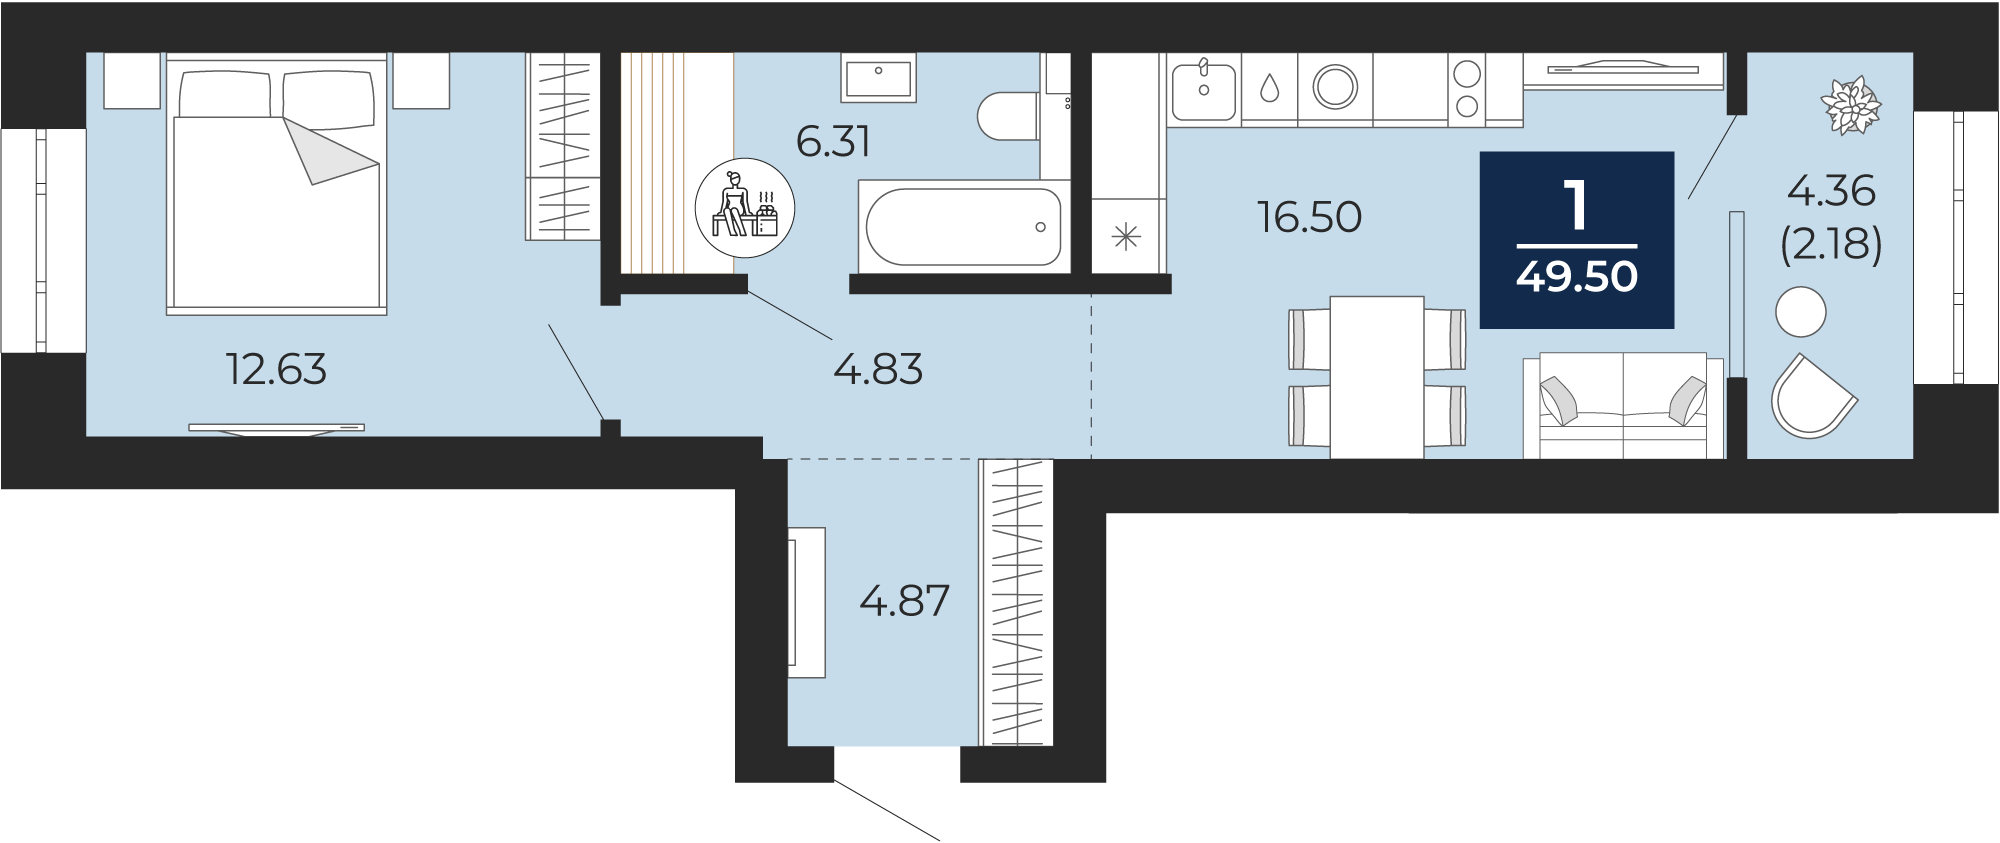 Квартира № 169, 1-комнатная, 49.5 кв. м, 8 этаж